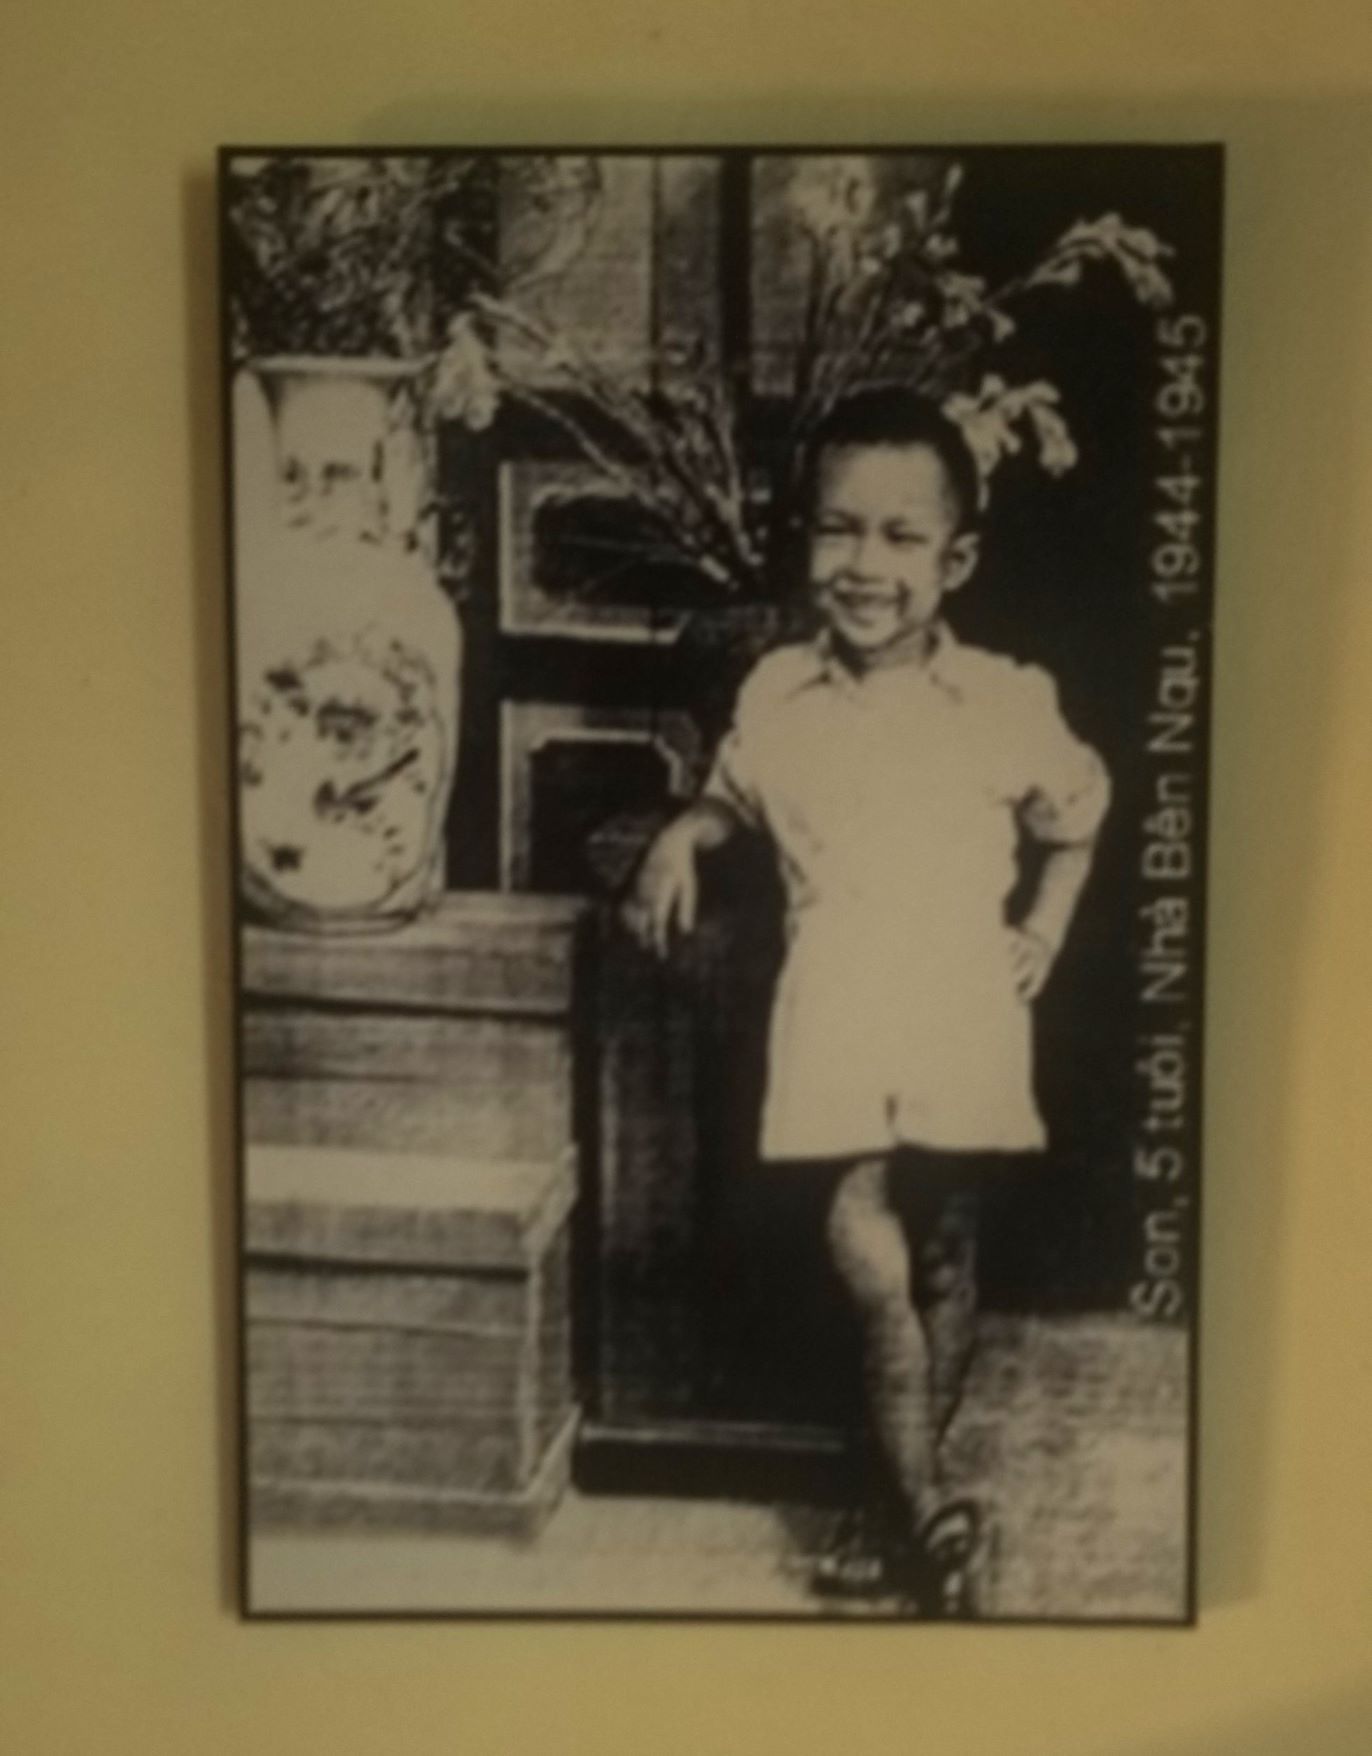 Bức chân dung nhạc sỹ Trịnh Công Sơn năm 5 tuổi đang được treo tại Gác Trịnh. Ảnh: Anh Tuấn